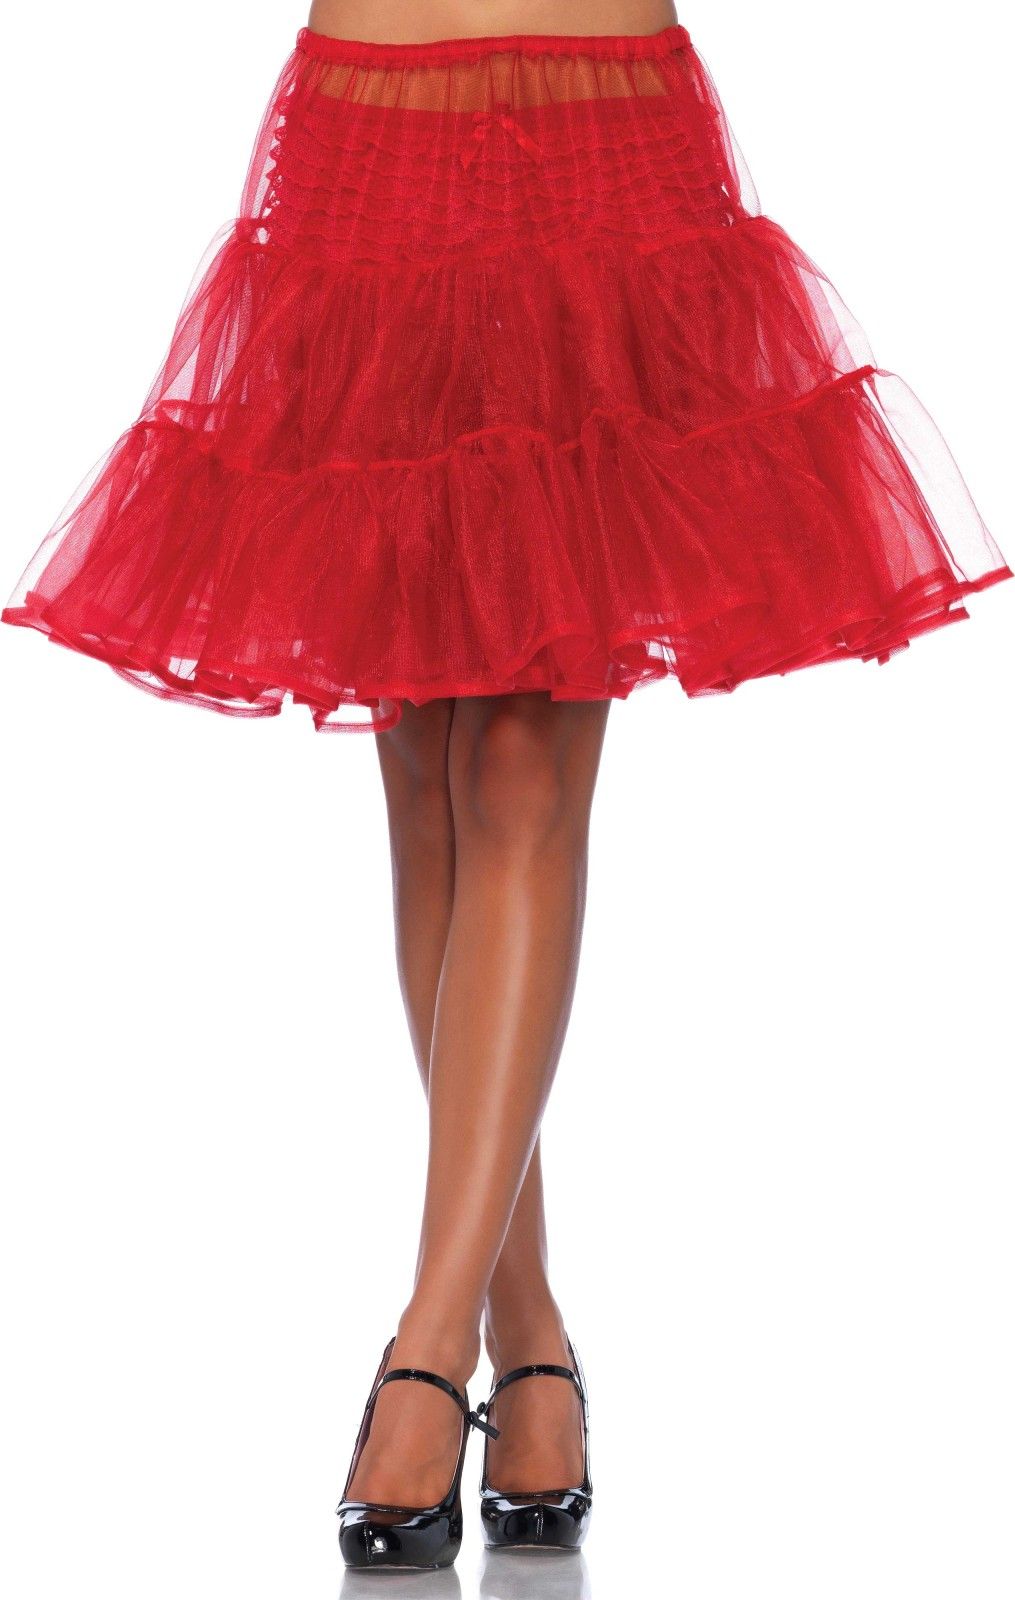 Rode glimmende petticoat